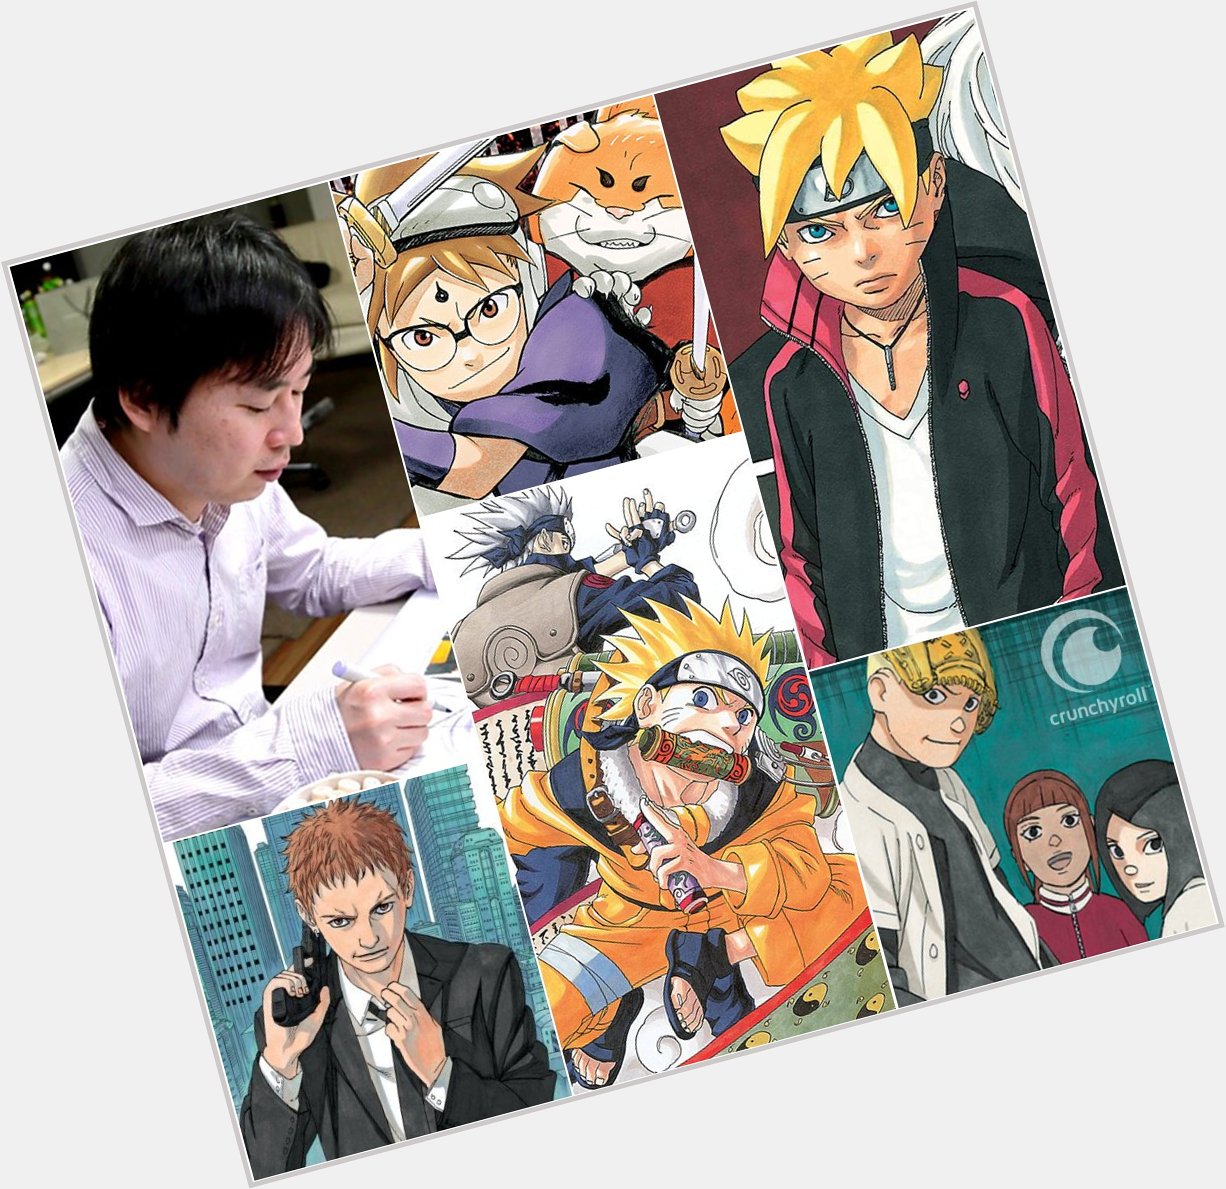 Happy birthday to Naruto creator, Masashi Kishimoto! 